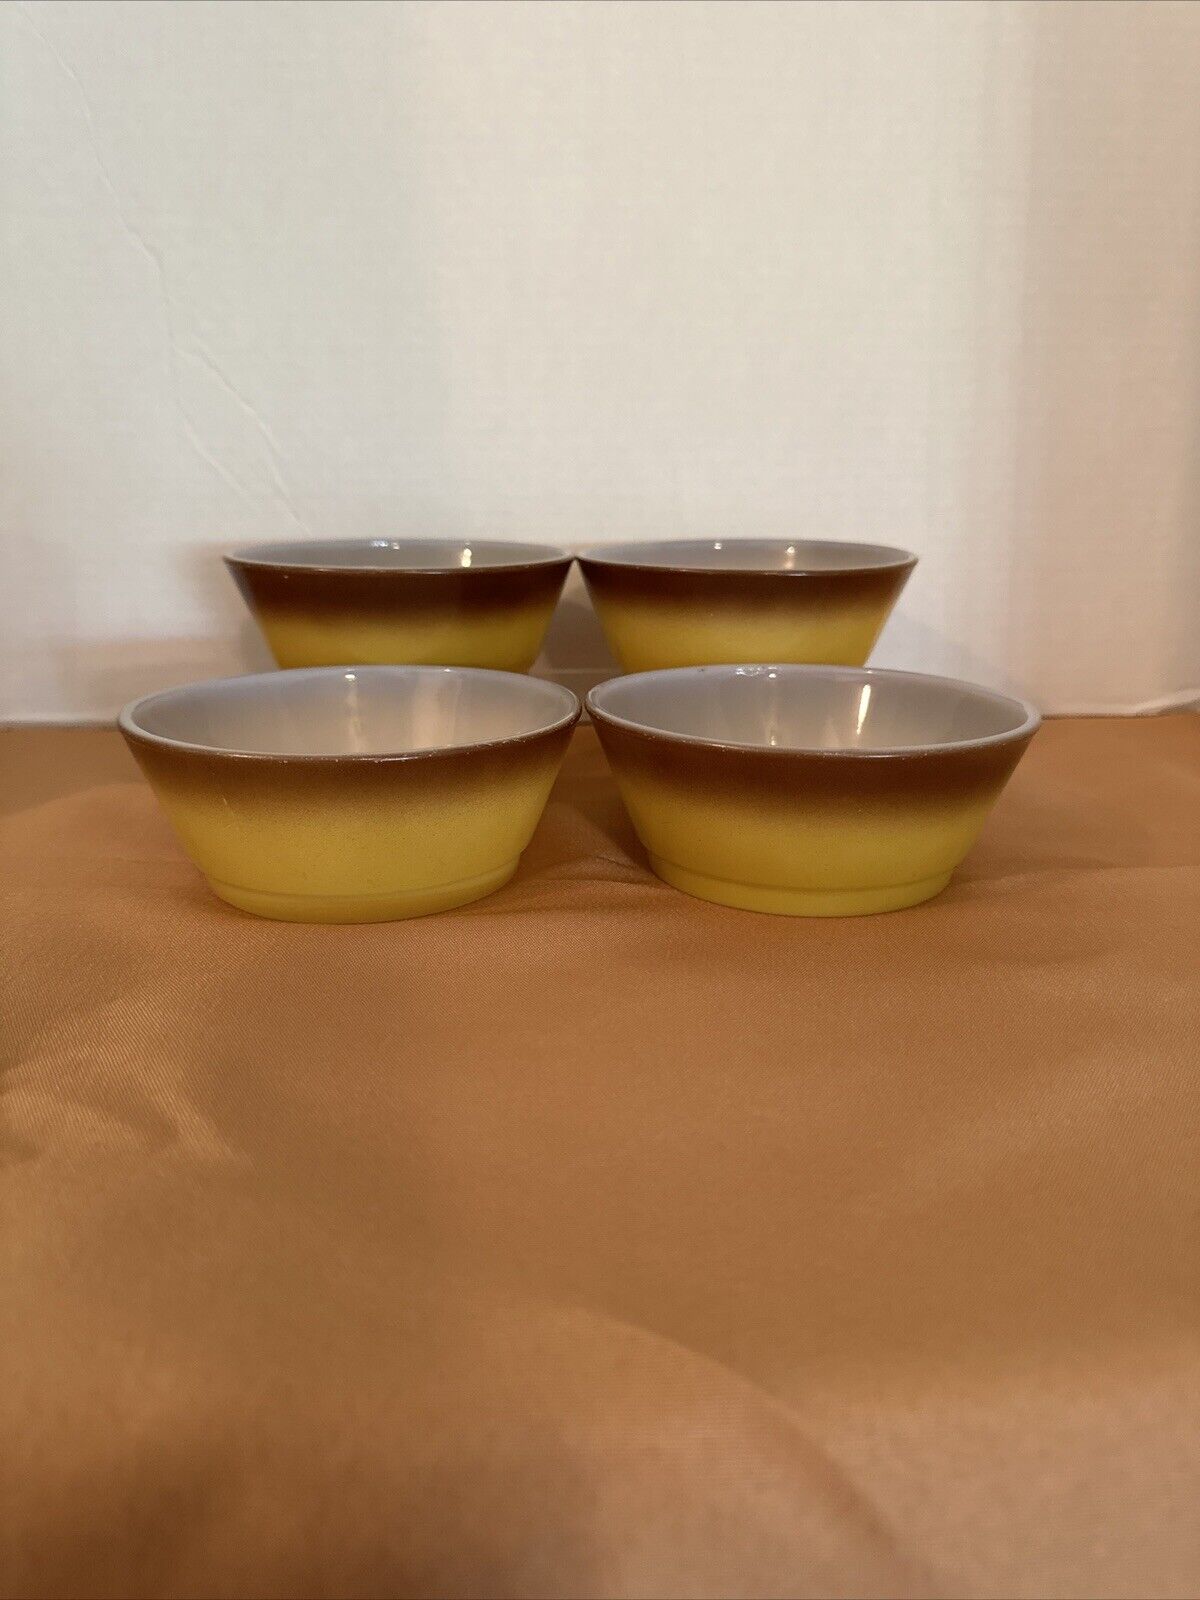 Fire King Gold/Brown Cereal Bowls Vintage -Set Of 4-Ovenproof